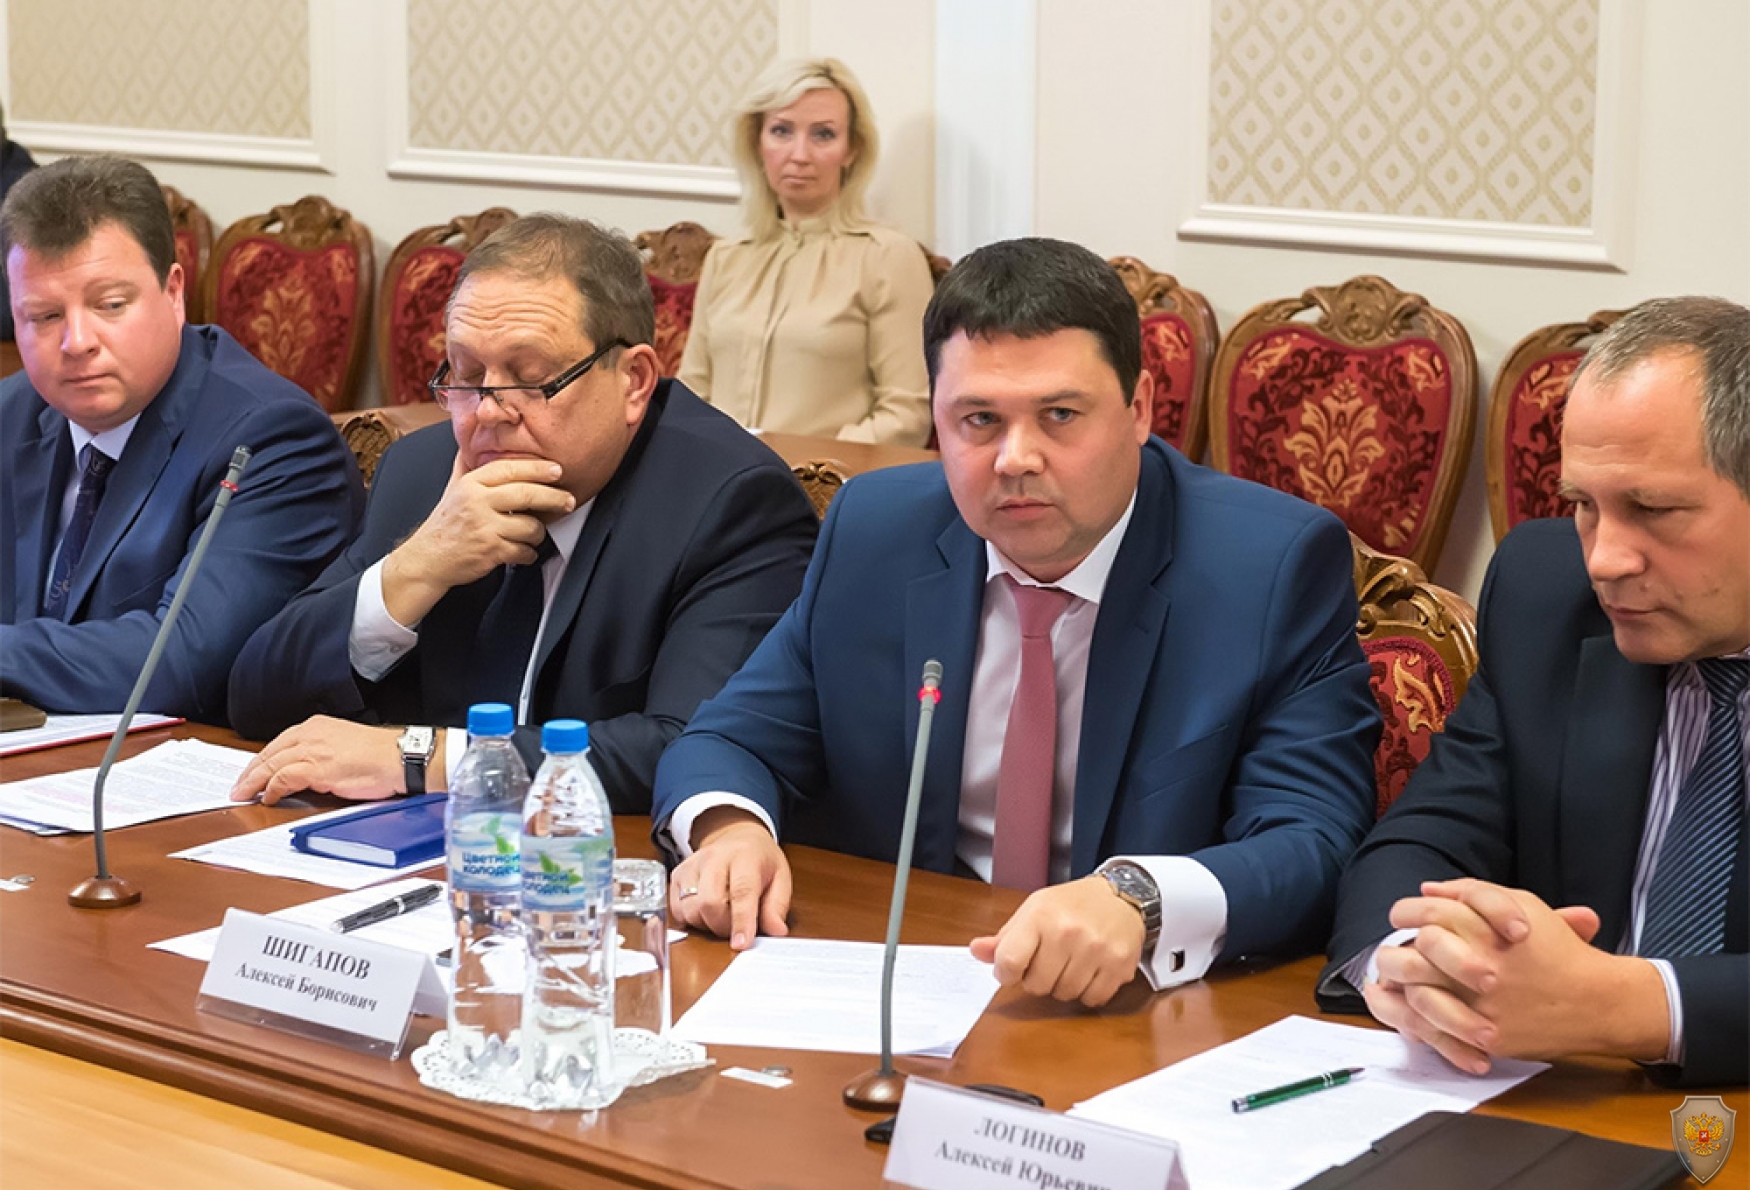 Участники заседания Антитеррористической комиссии в Калужской области